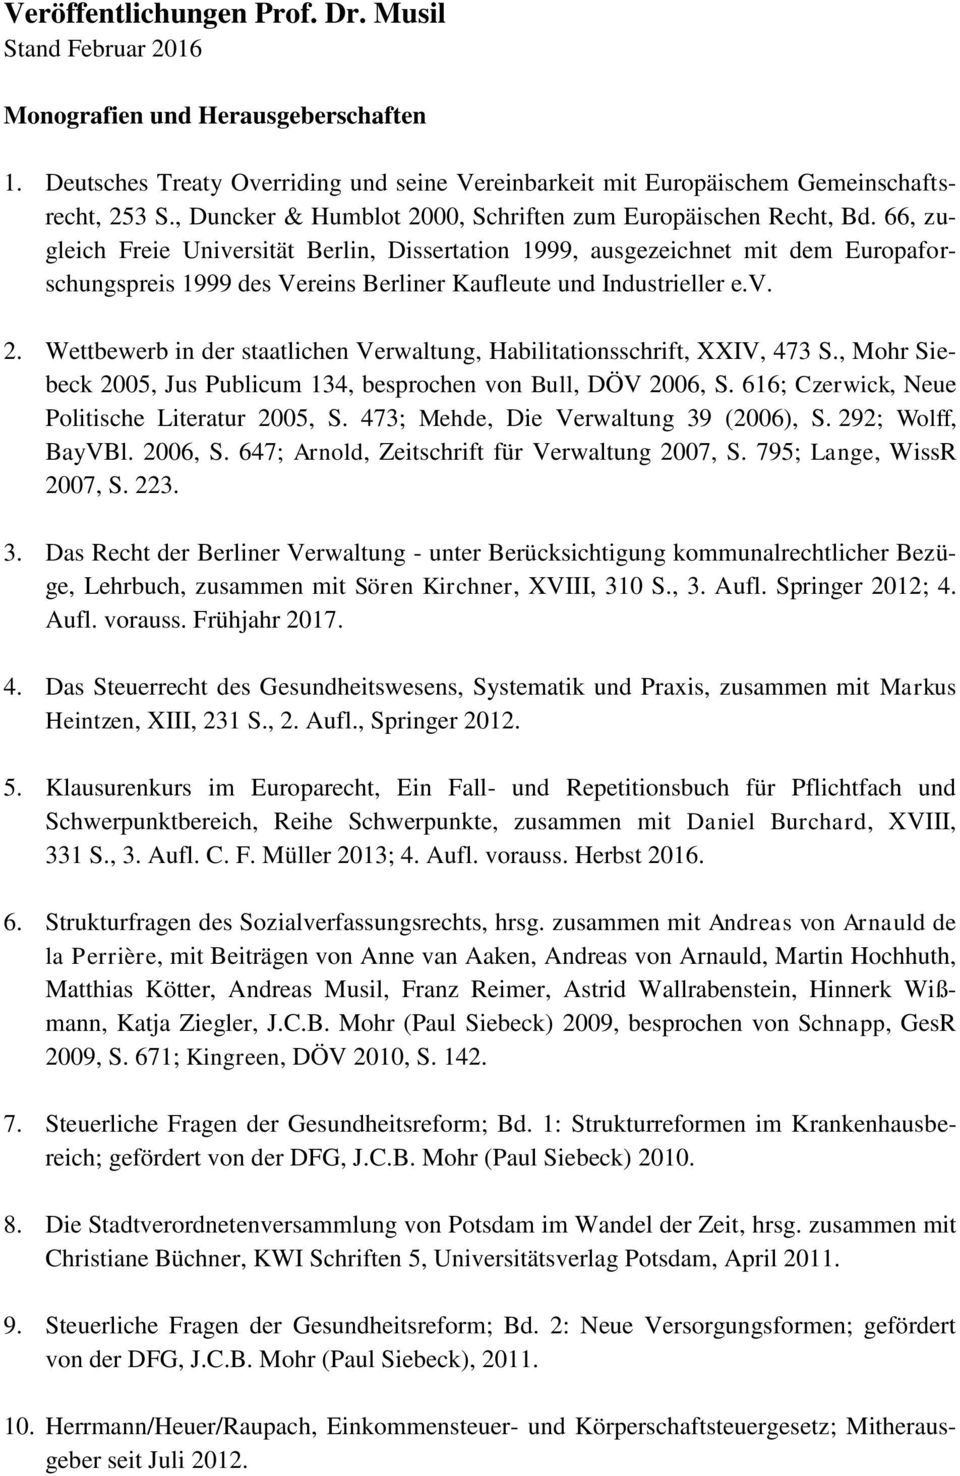 66, zugleich Freie Universität Berlin, Dissertation 1999, ausgezeichnet mit dem Europaforschungspreis 1999 des Vereins Berliner Kaufleute und Industrieller e.v. 2.